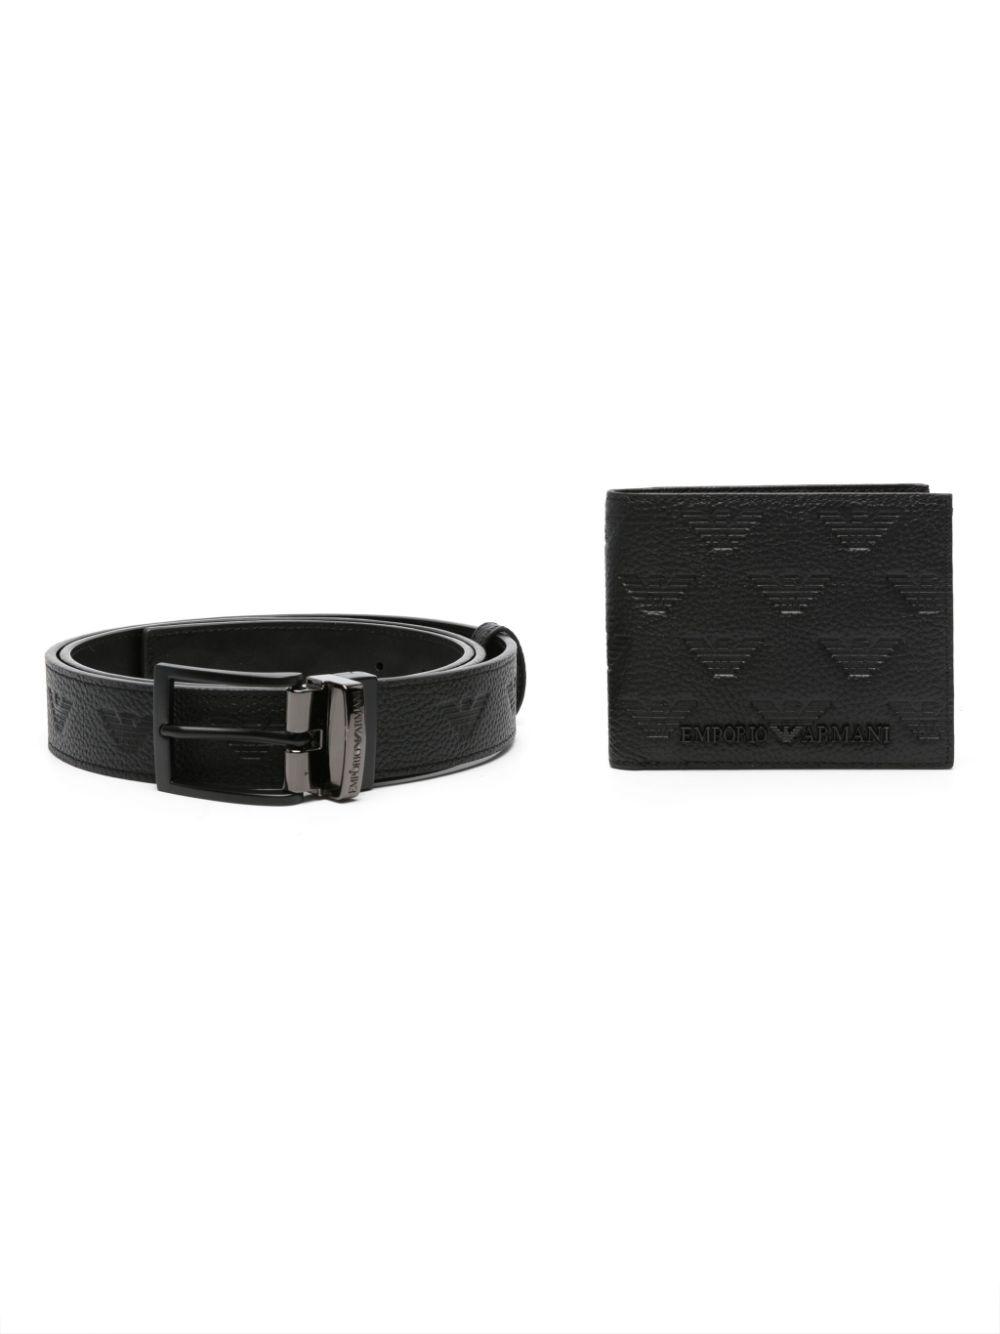 Louis Vuitton Damier Leather Men's Belts - Men's Accessories BD